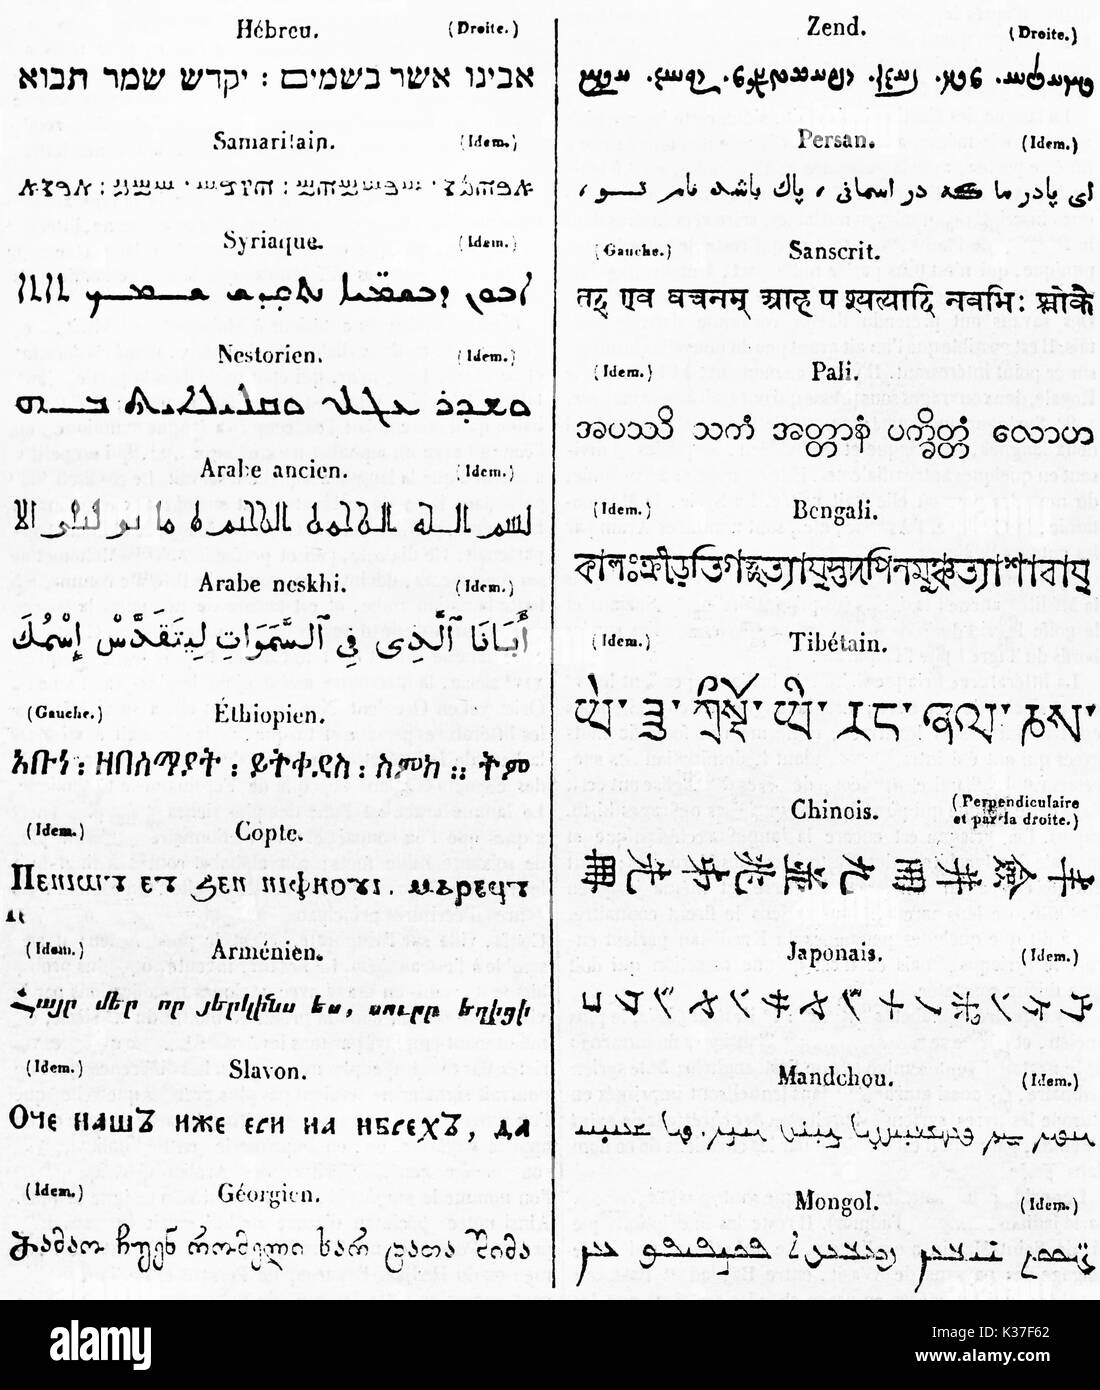 Alte Tabelle Liste der exotischen Alphabete, schwarze Schrift auf weißem Papier. Auf Magasin Pittoresque Paris 1834 veröffentlicht. Stockfoto